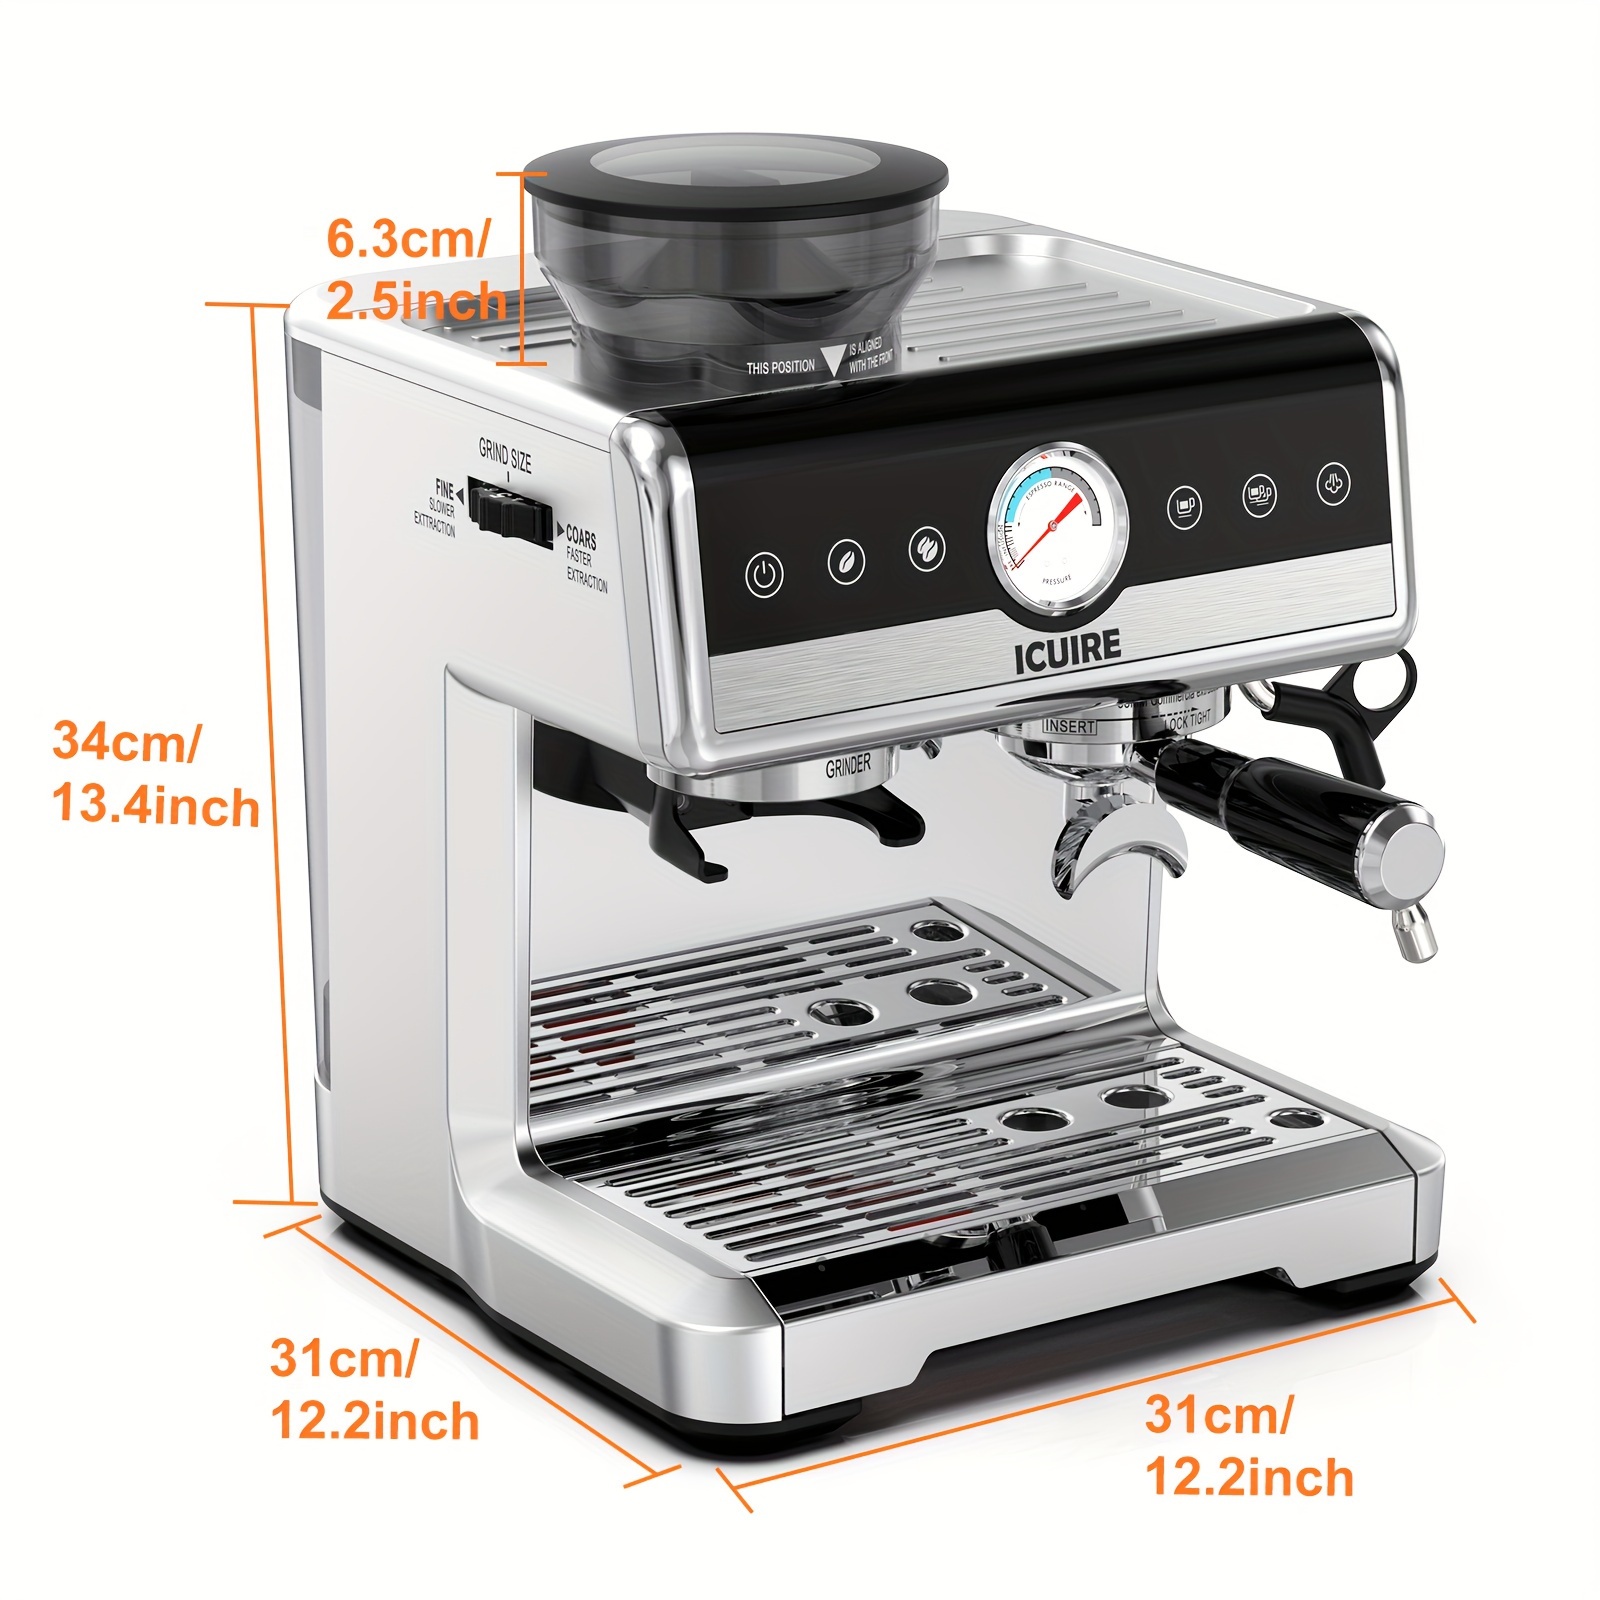 Accessories, Commercial Cappuccino Coffee & Espresso Machine